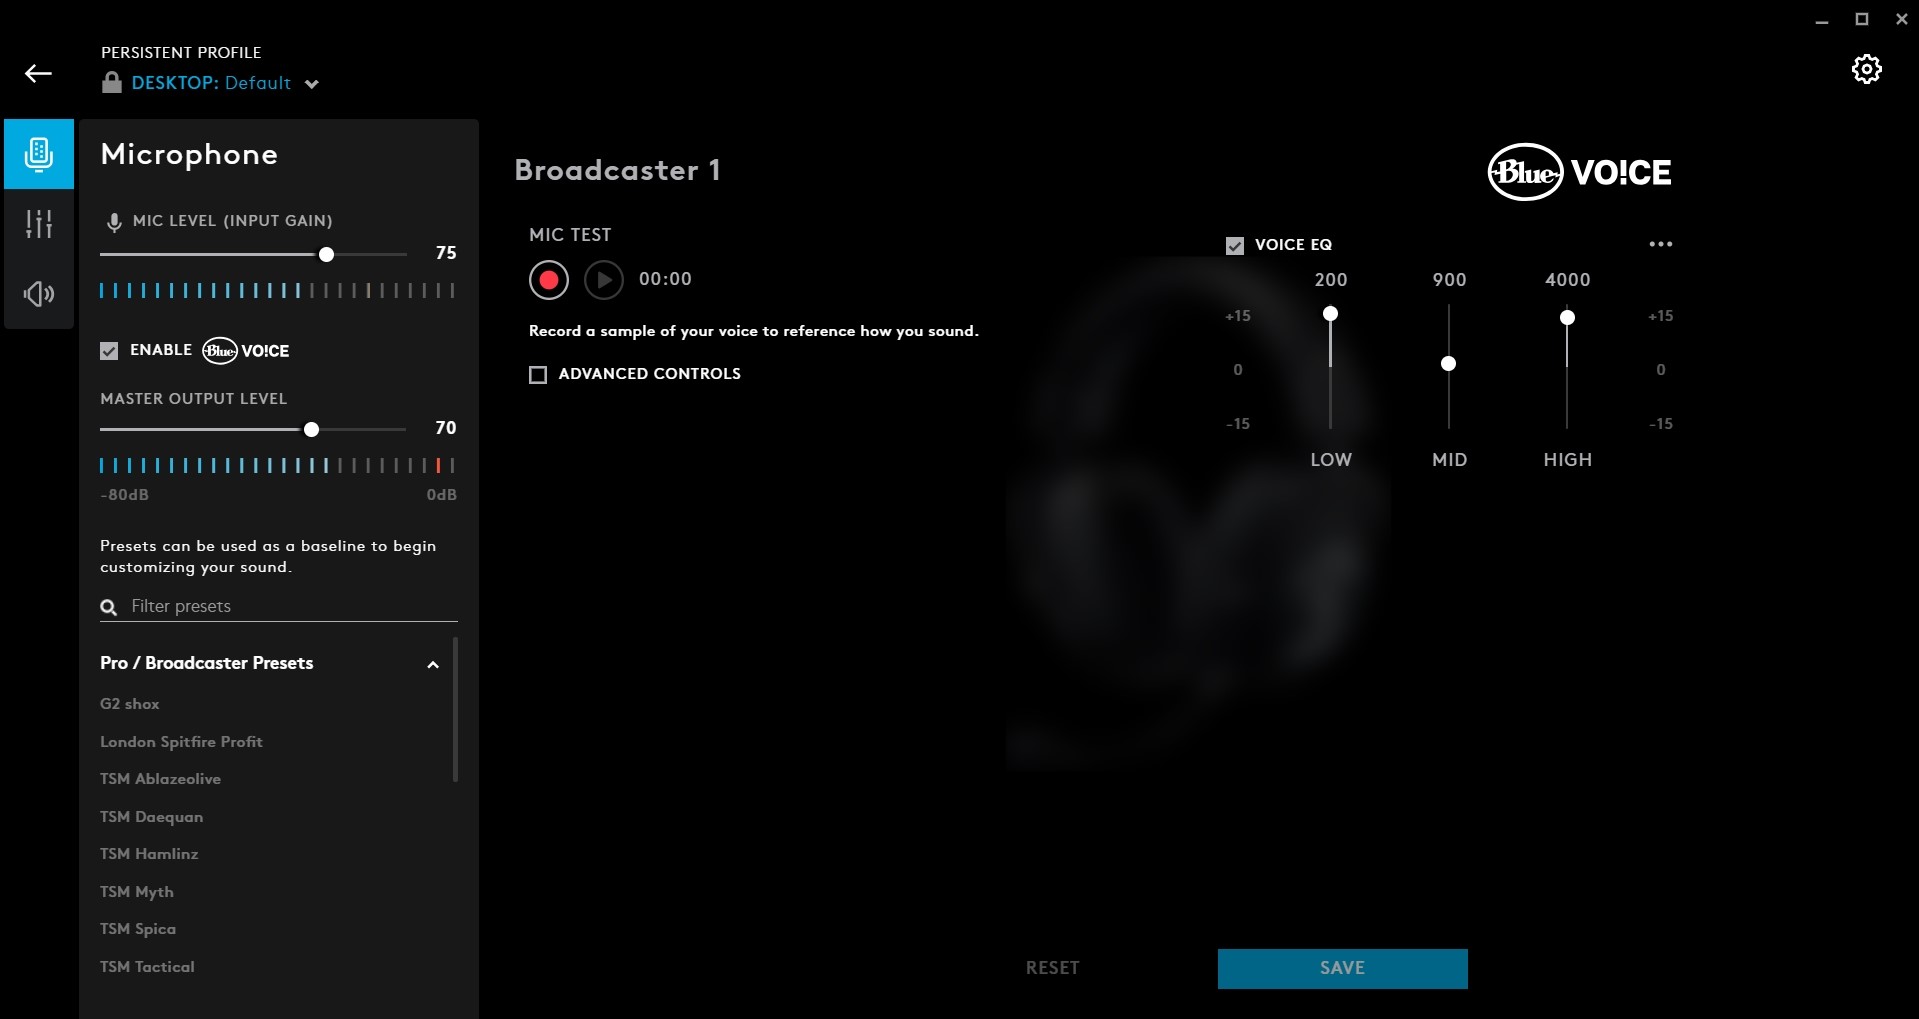 Đánh giá tai nghe chơi game Logitech G Pro X: Bản nâng cấp hoàn hảo cho game thủ